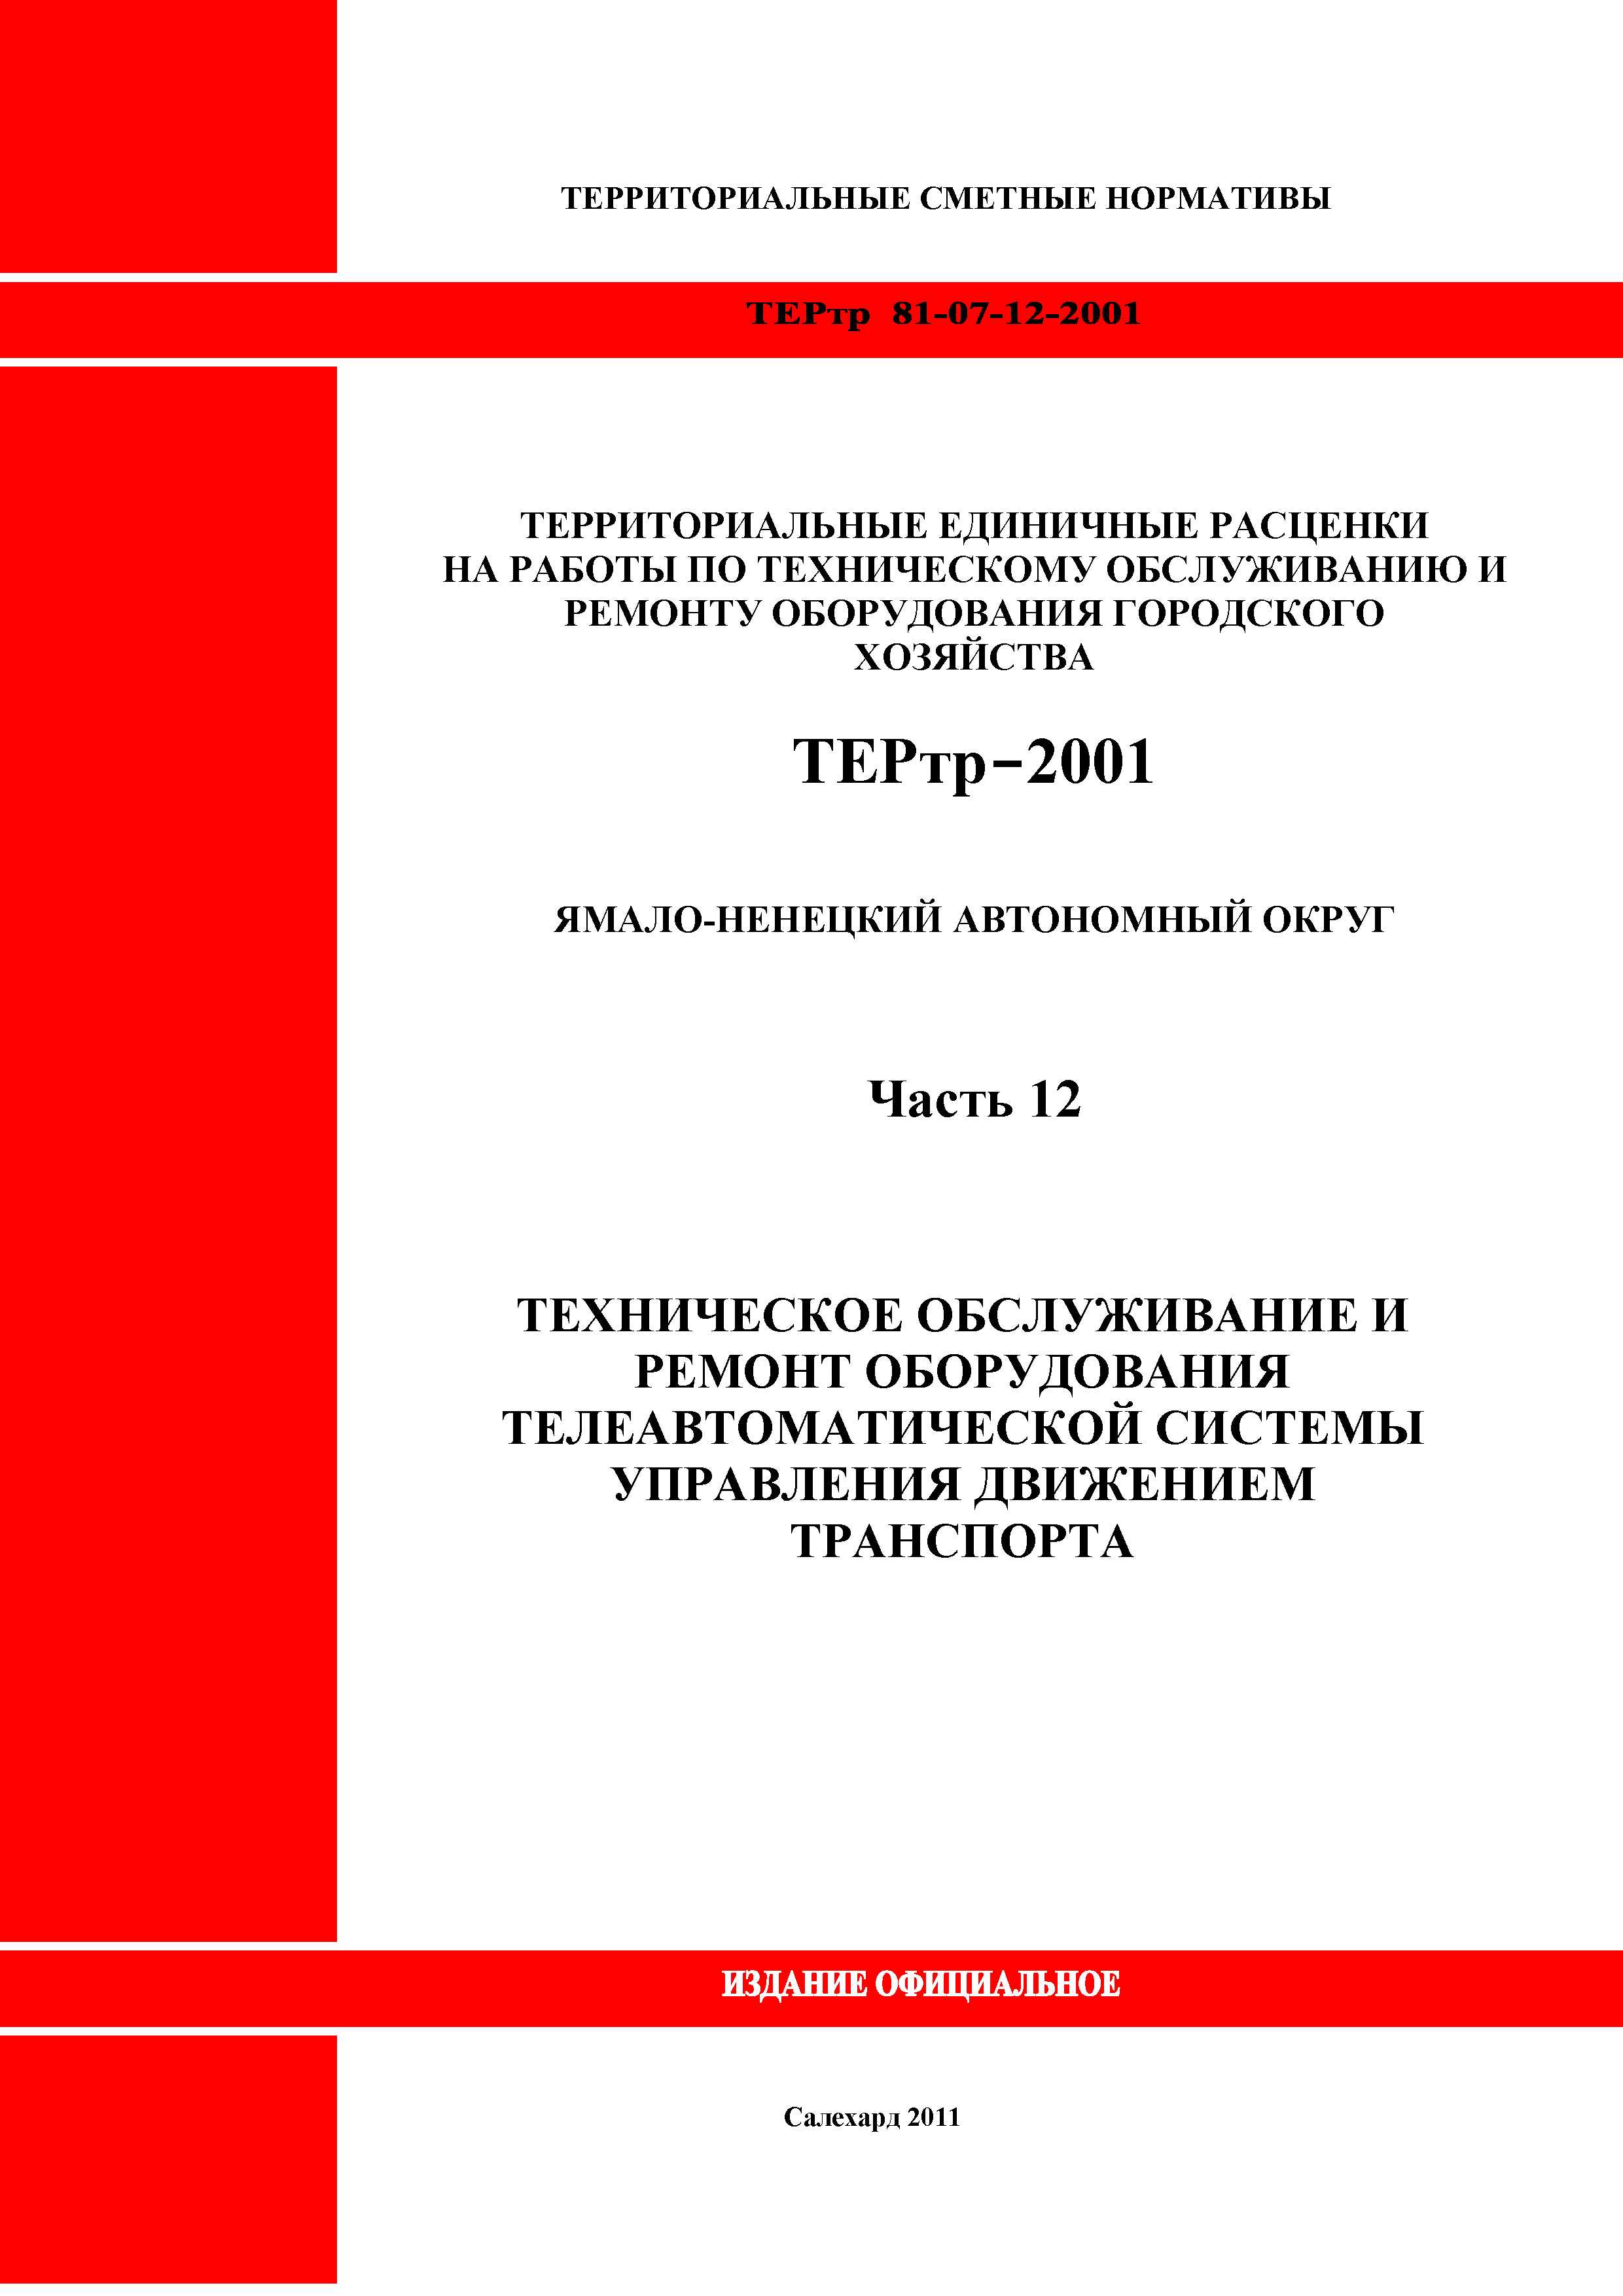 ТЕРтр Ямало-Ненецкий автономный округ 12-2001